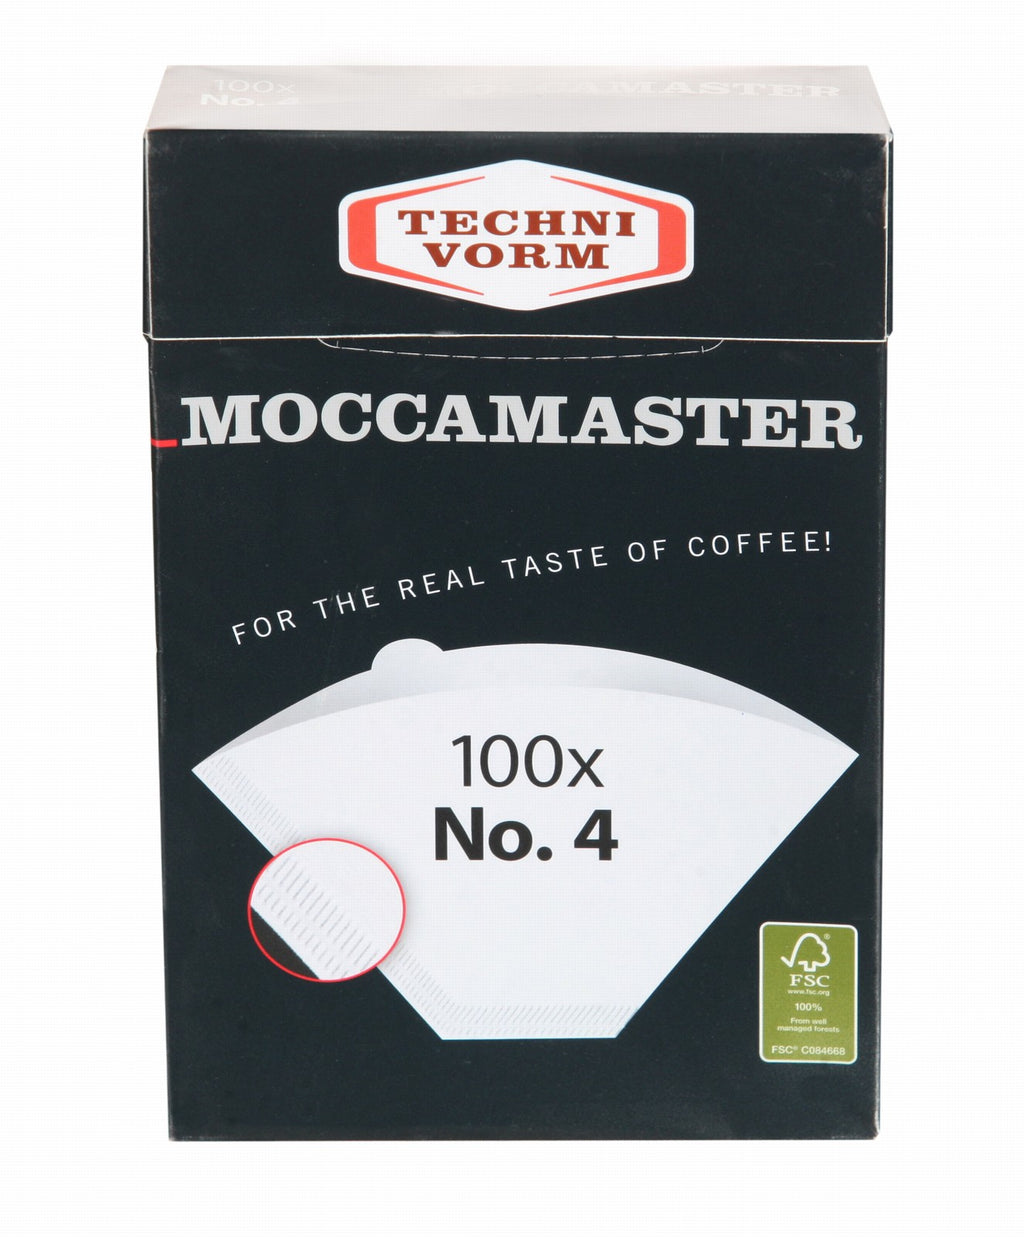 Select Zermatt Rösterei Paper – KBGT Kaffee (No. and 4) KBG Filters Moccamaster